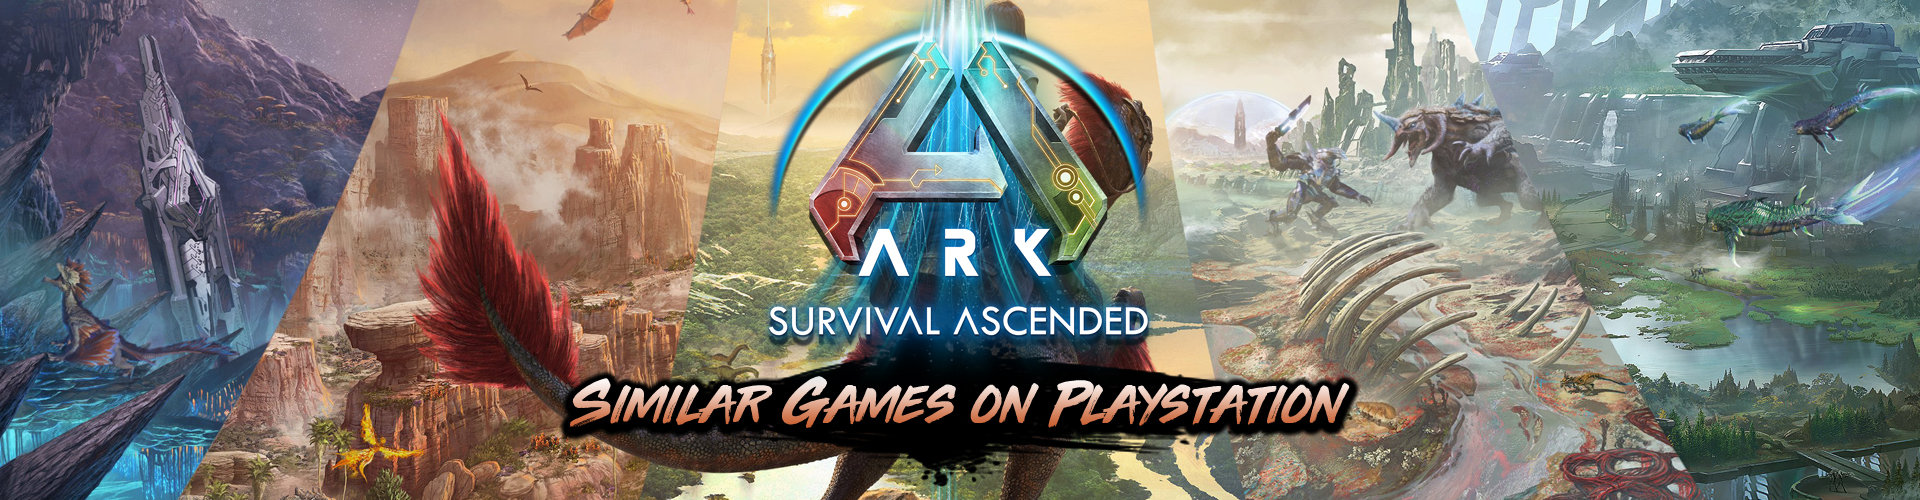 Playstation Games Like ARK Survival Ascended